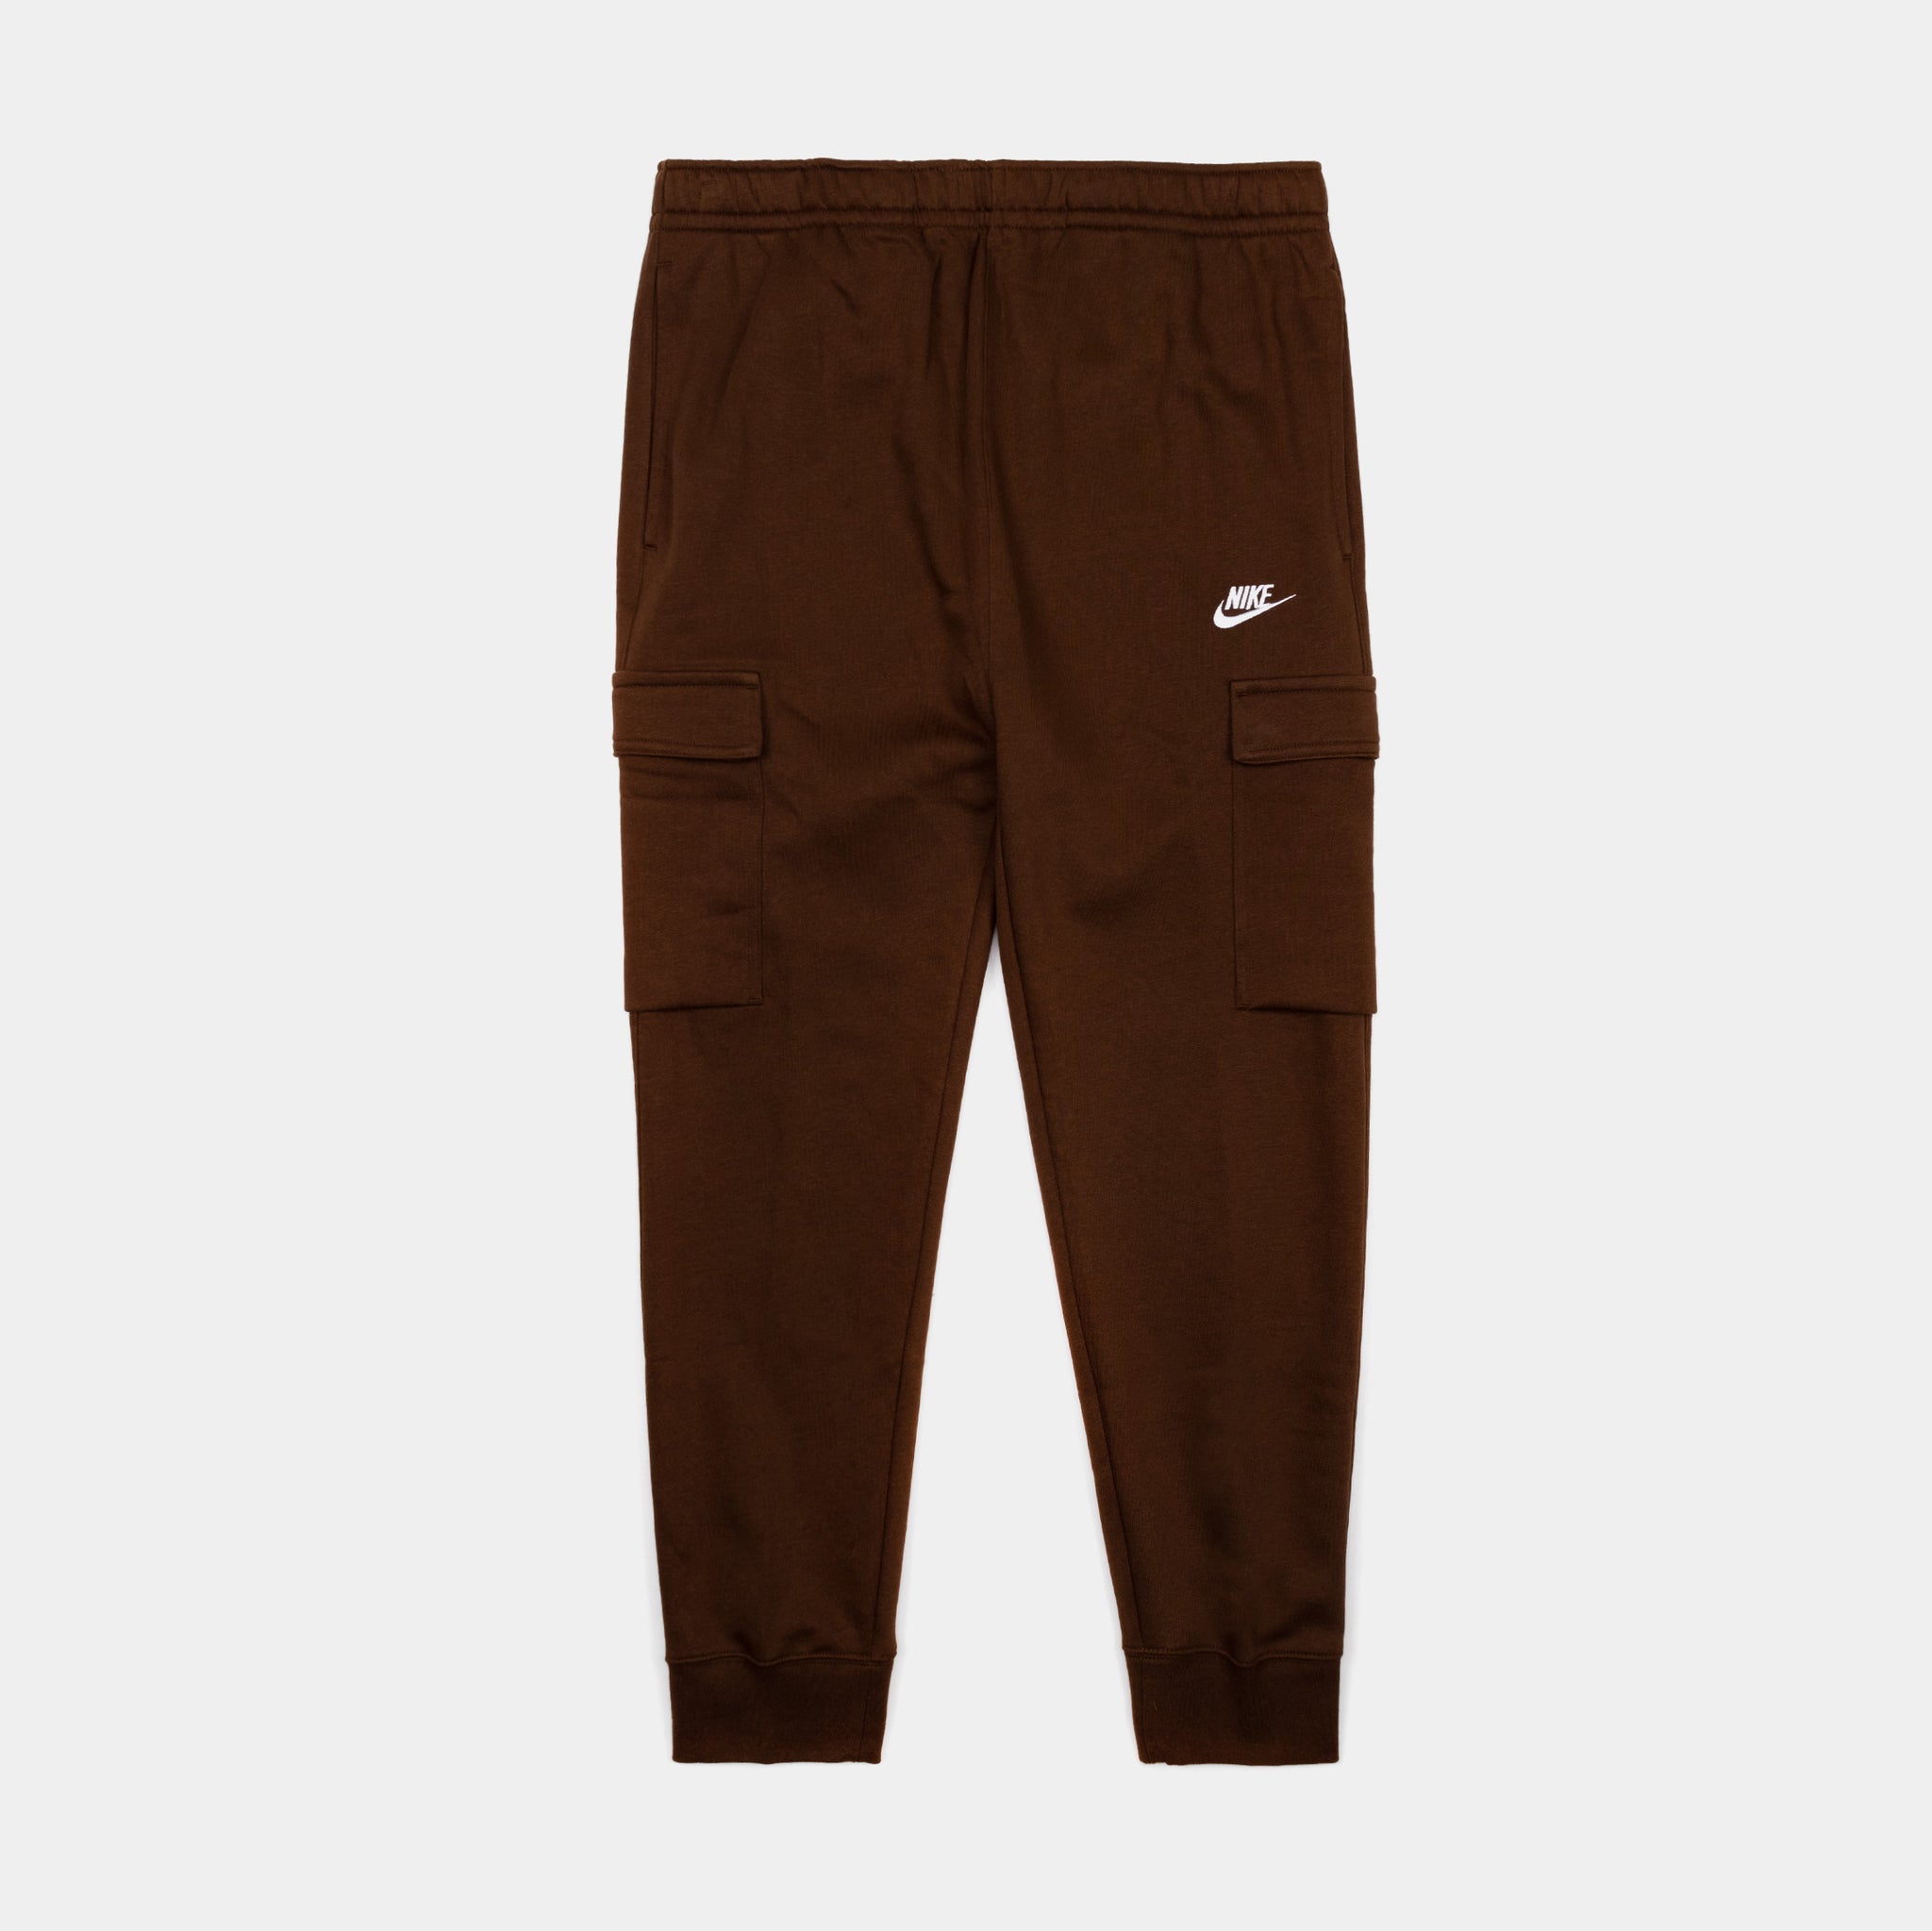 Nike Team Brown Standard Issue Brown Sweat Pants